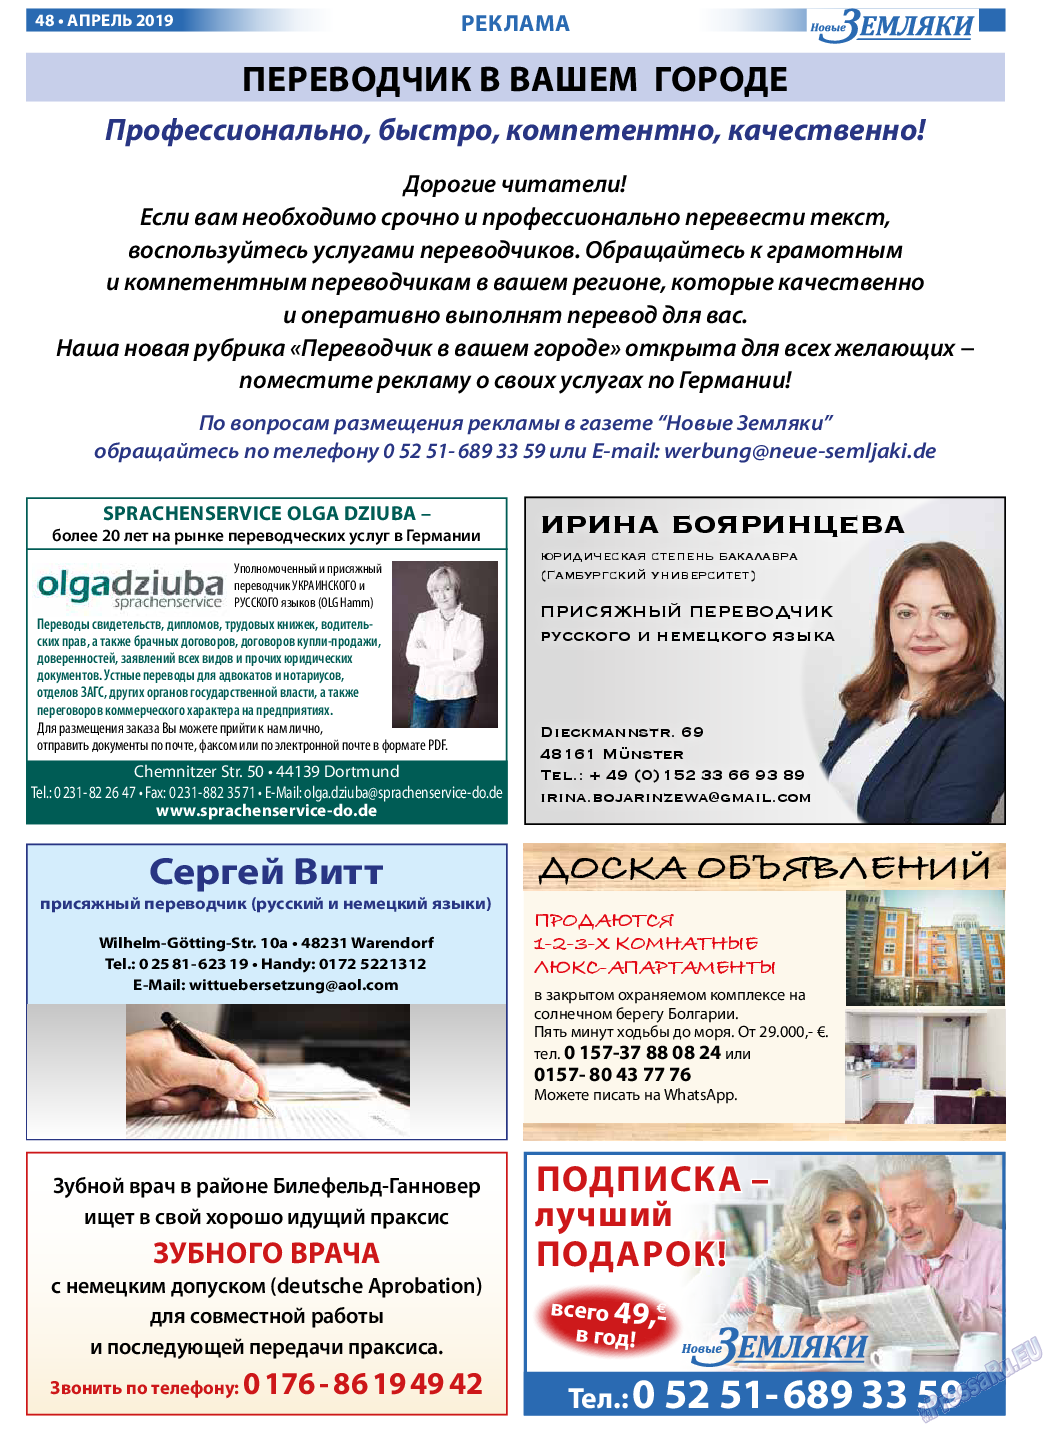 Новые Земляки, газета. 2019 №4 стр.48